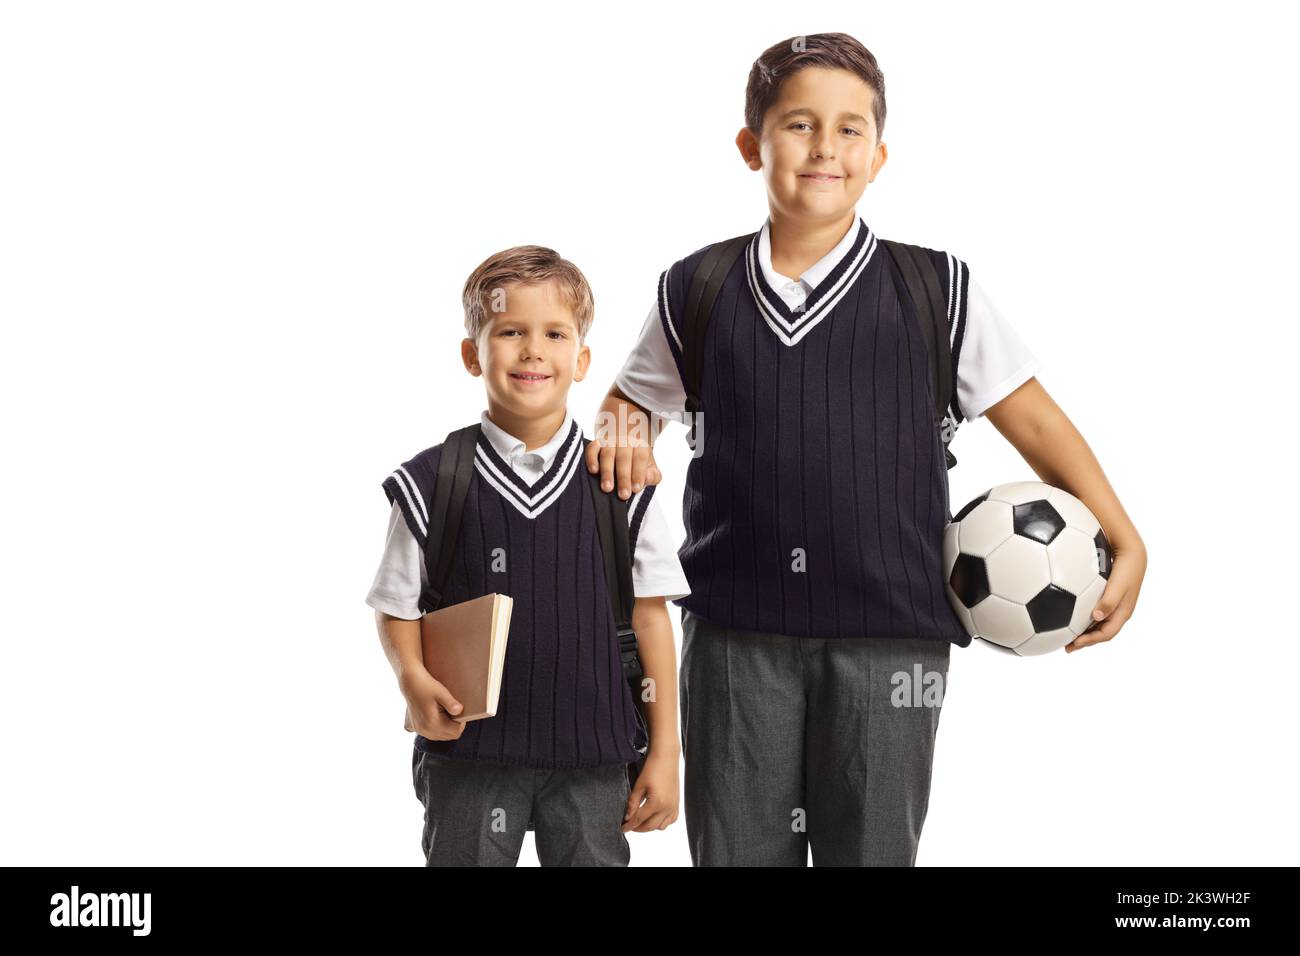 Hermanos con uniformes escolares y un balón de fútbol aislado sobre fondo blanco Foto de stock